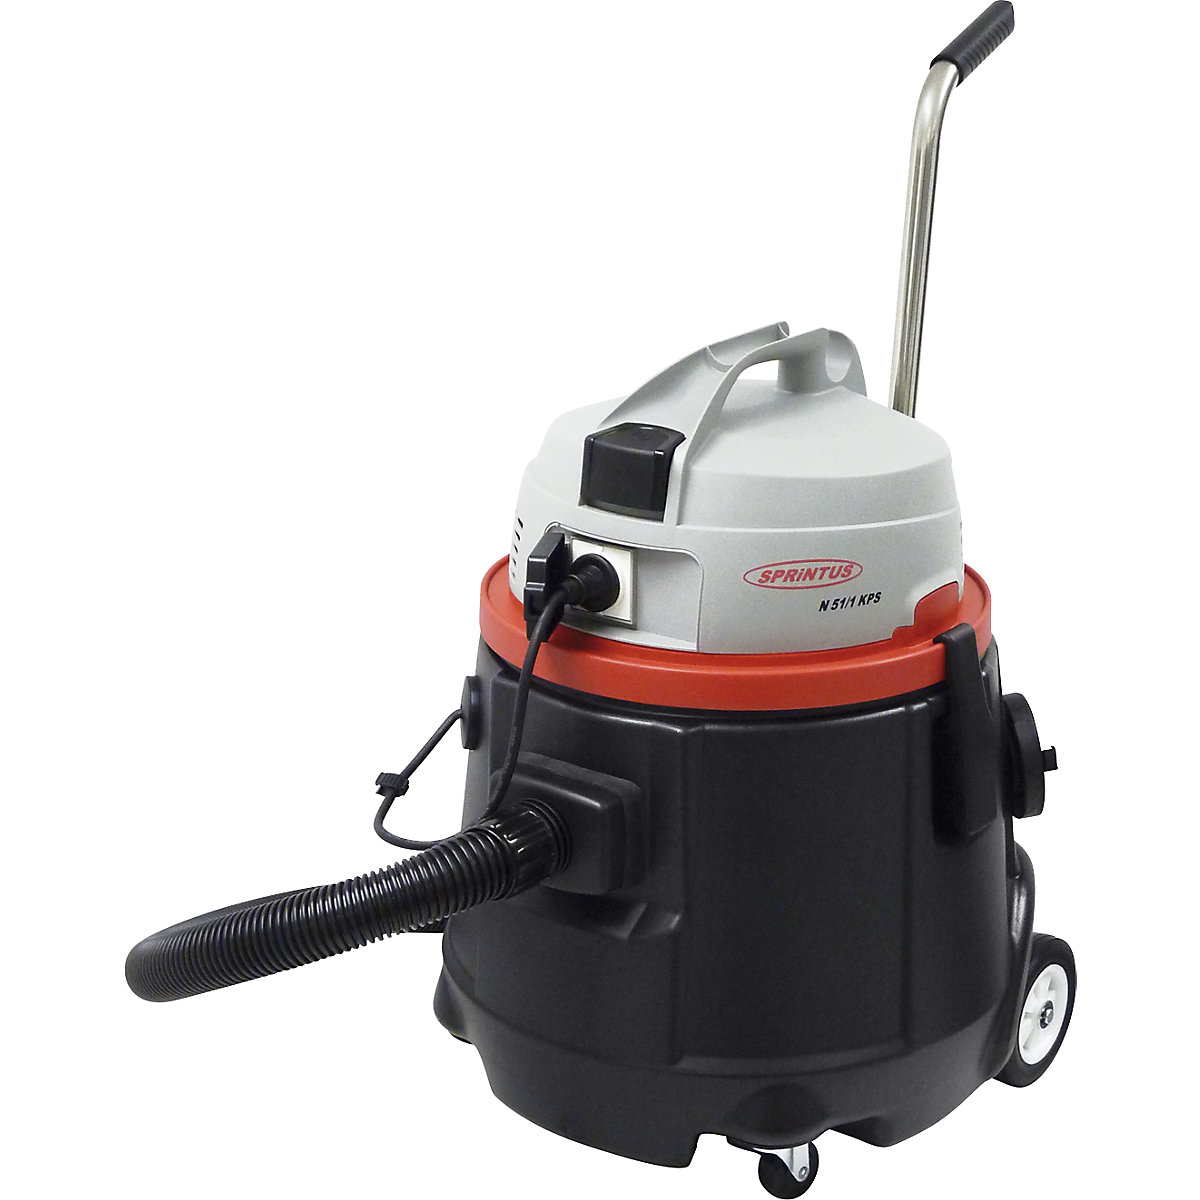 Sprintus – Wet and dry vacuum cleaner, pump vacuum N 51/1 KPS 50 l, power 2200 W